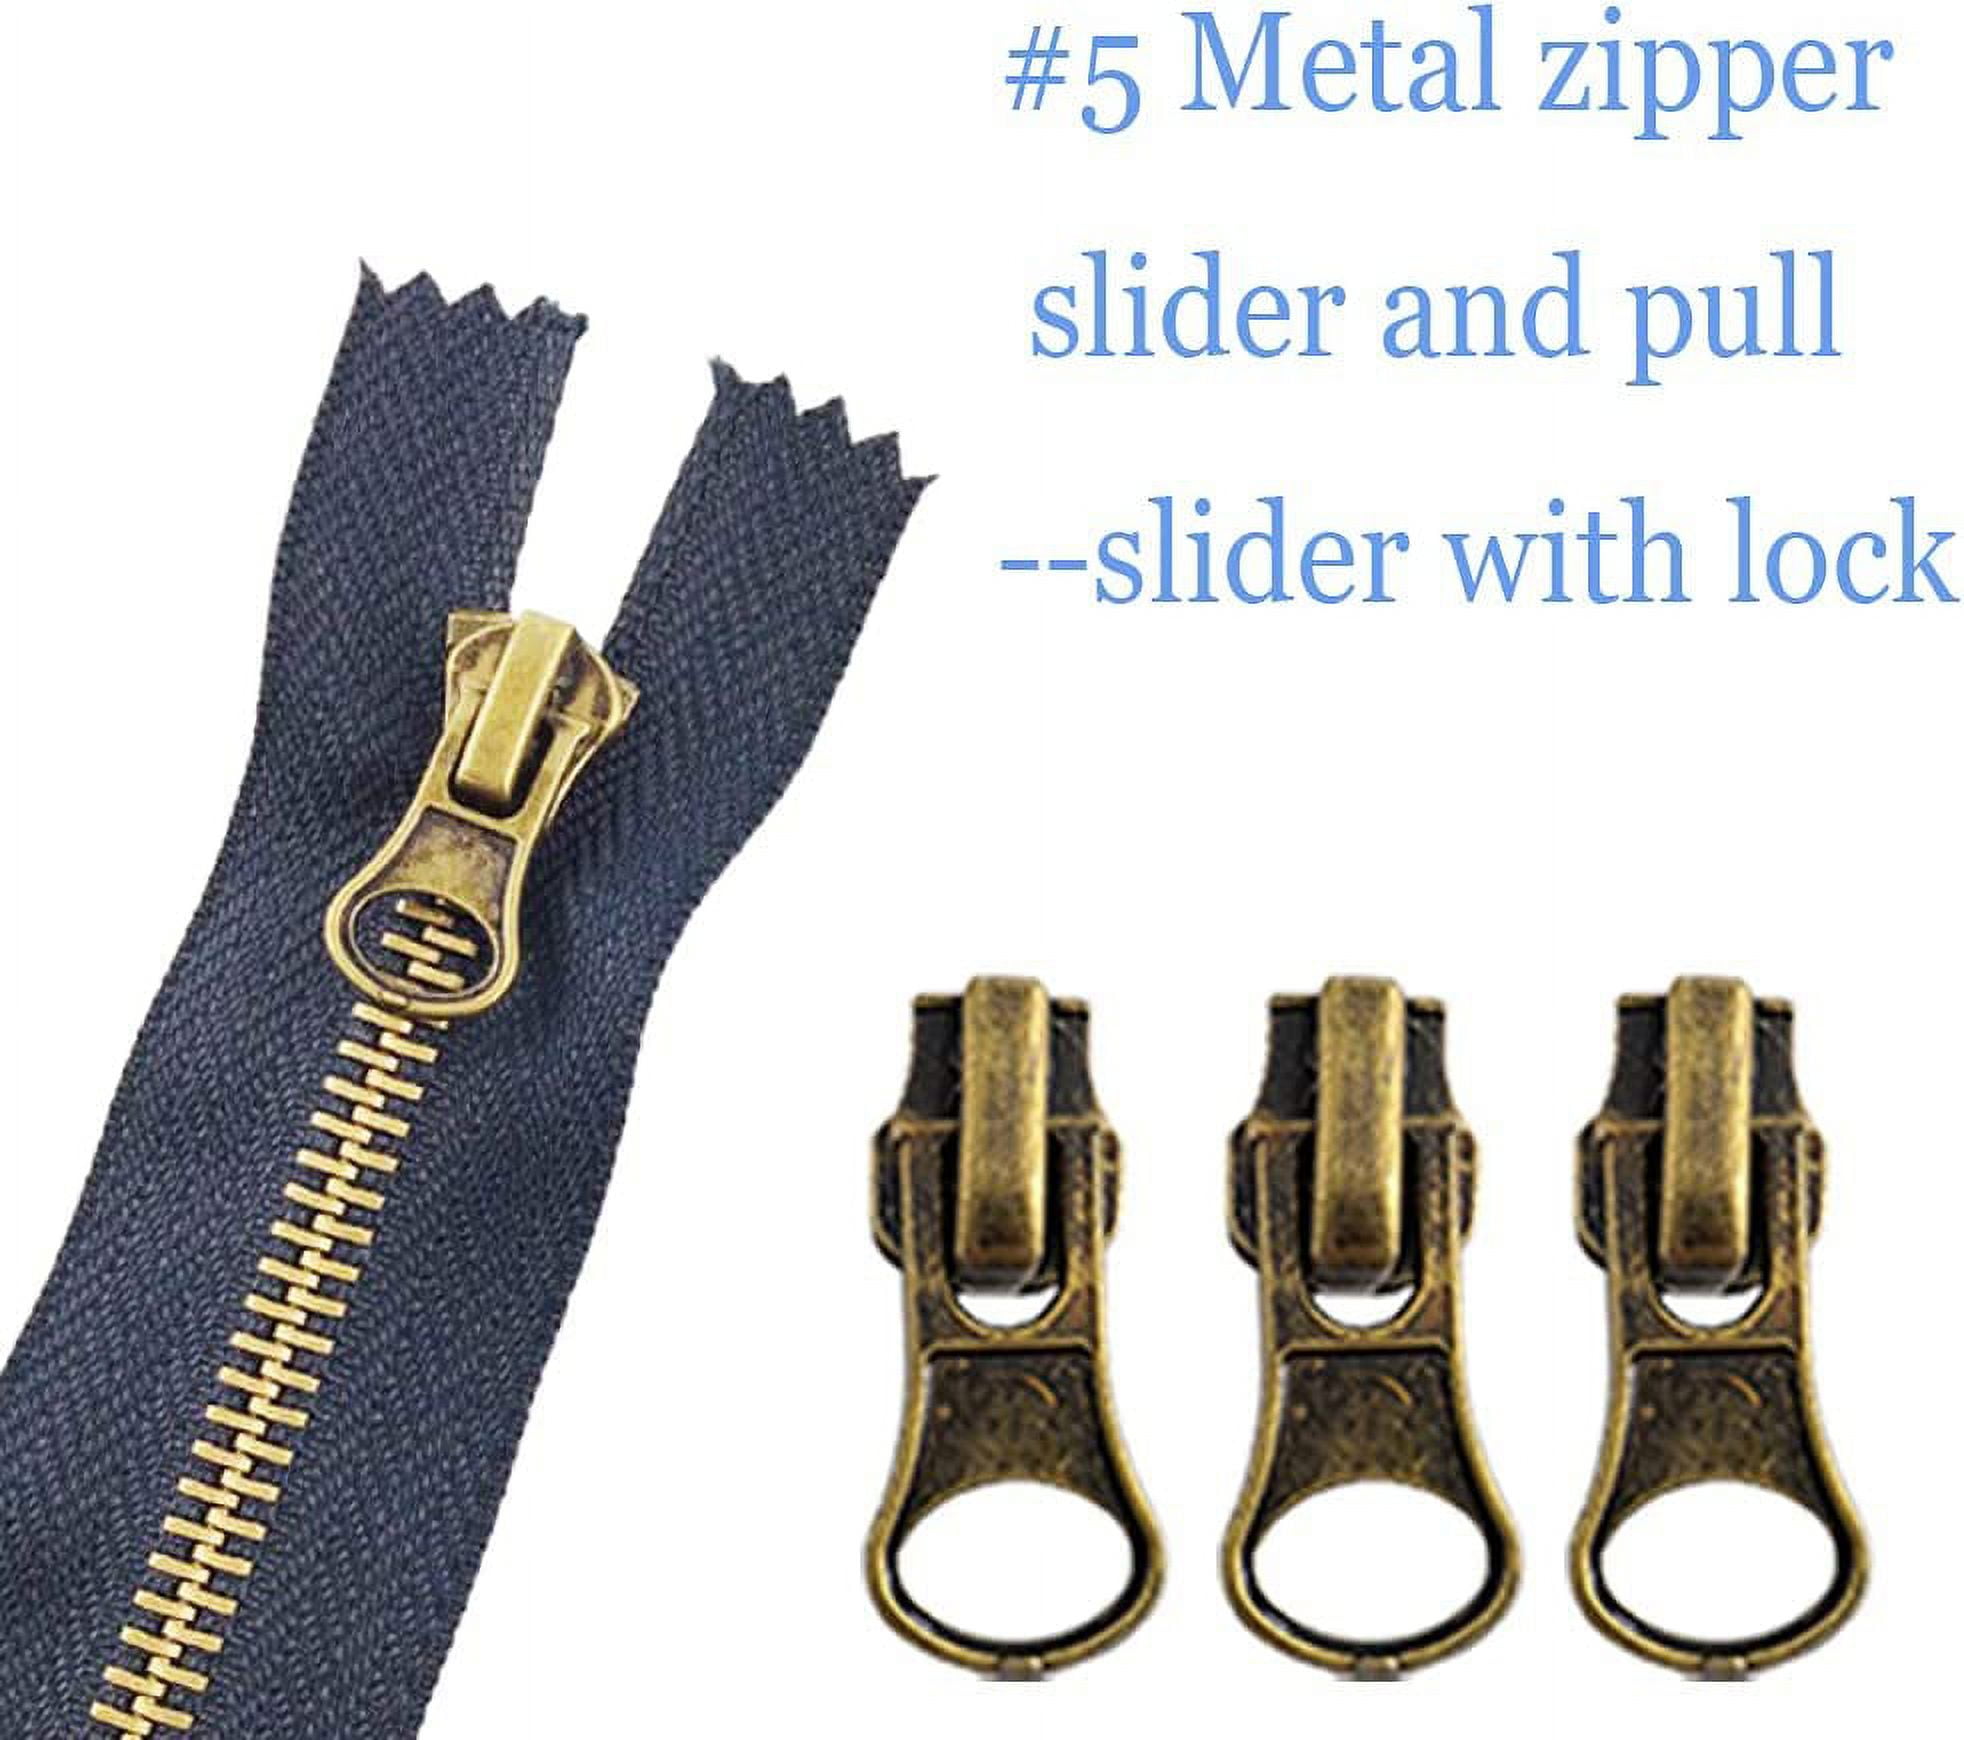 12 Pcs Zipper Pull Replacement Zipper Slider,Zipper Repair Kit 3